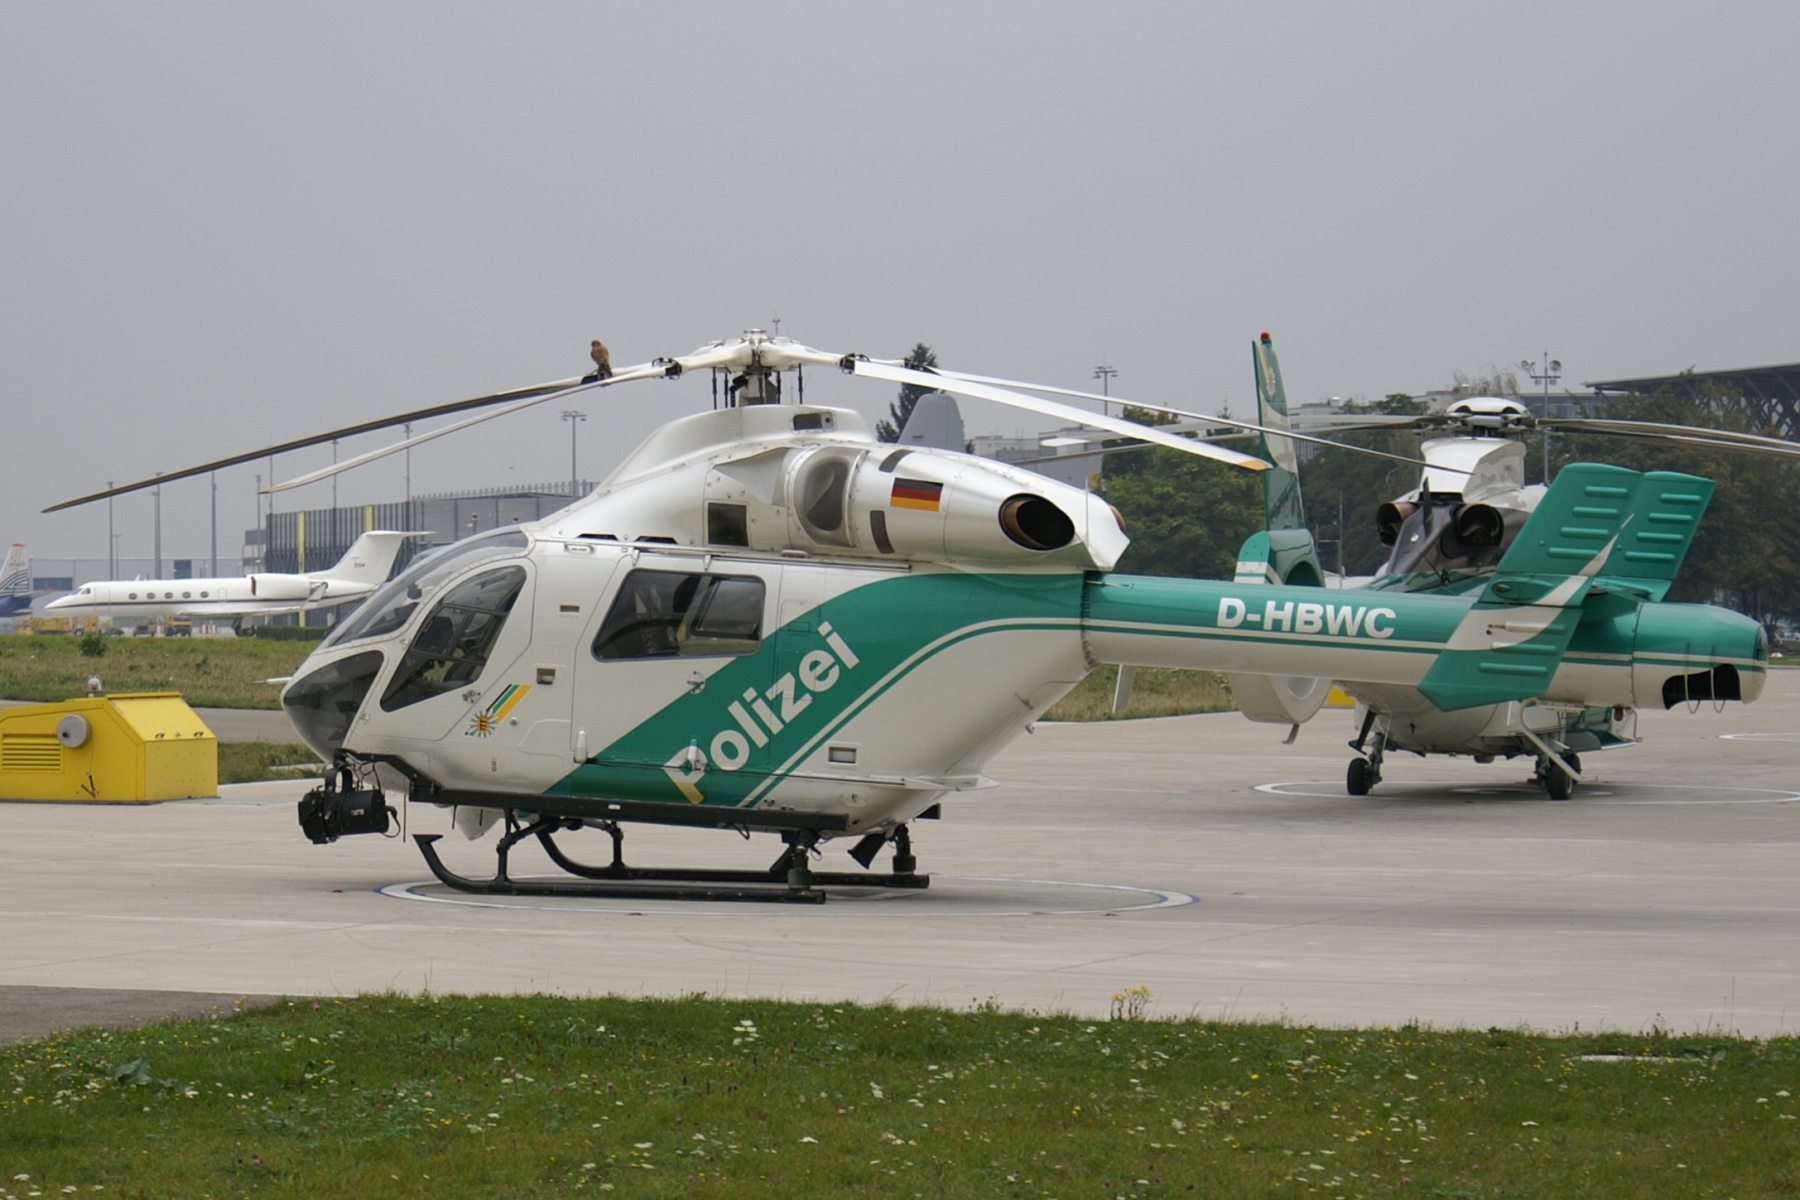 A magyar rendőrség szerint kiváló ár-érték arányú helikoptereket vettek, igaz, többet fizettek a felújításért mint a gépekért